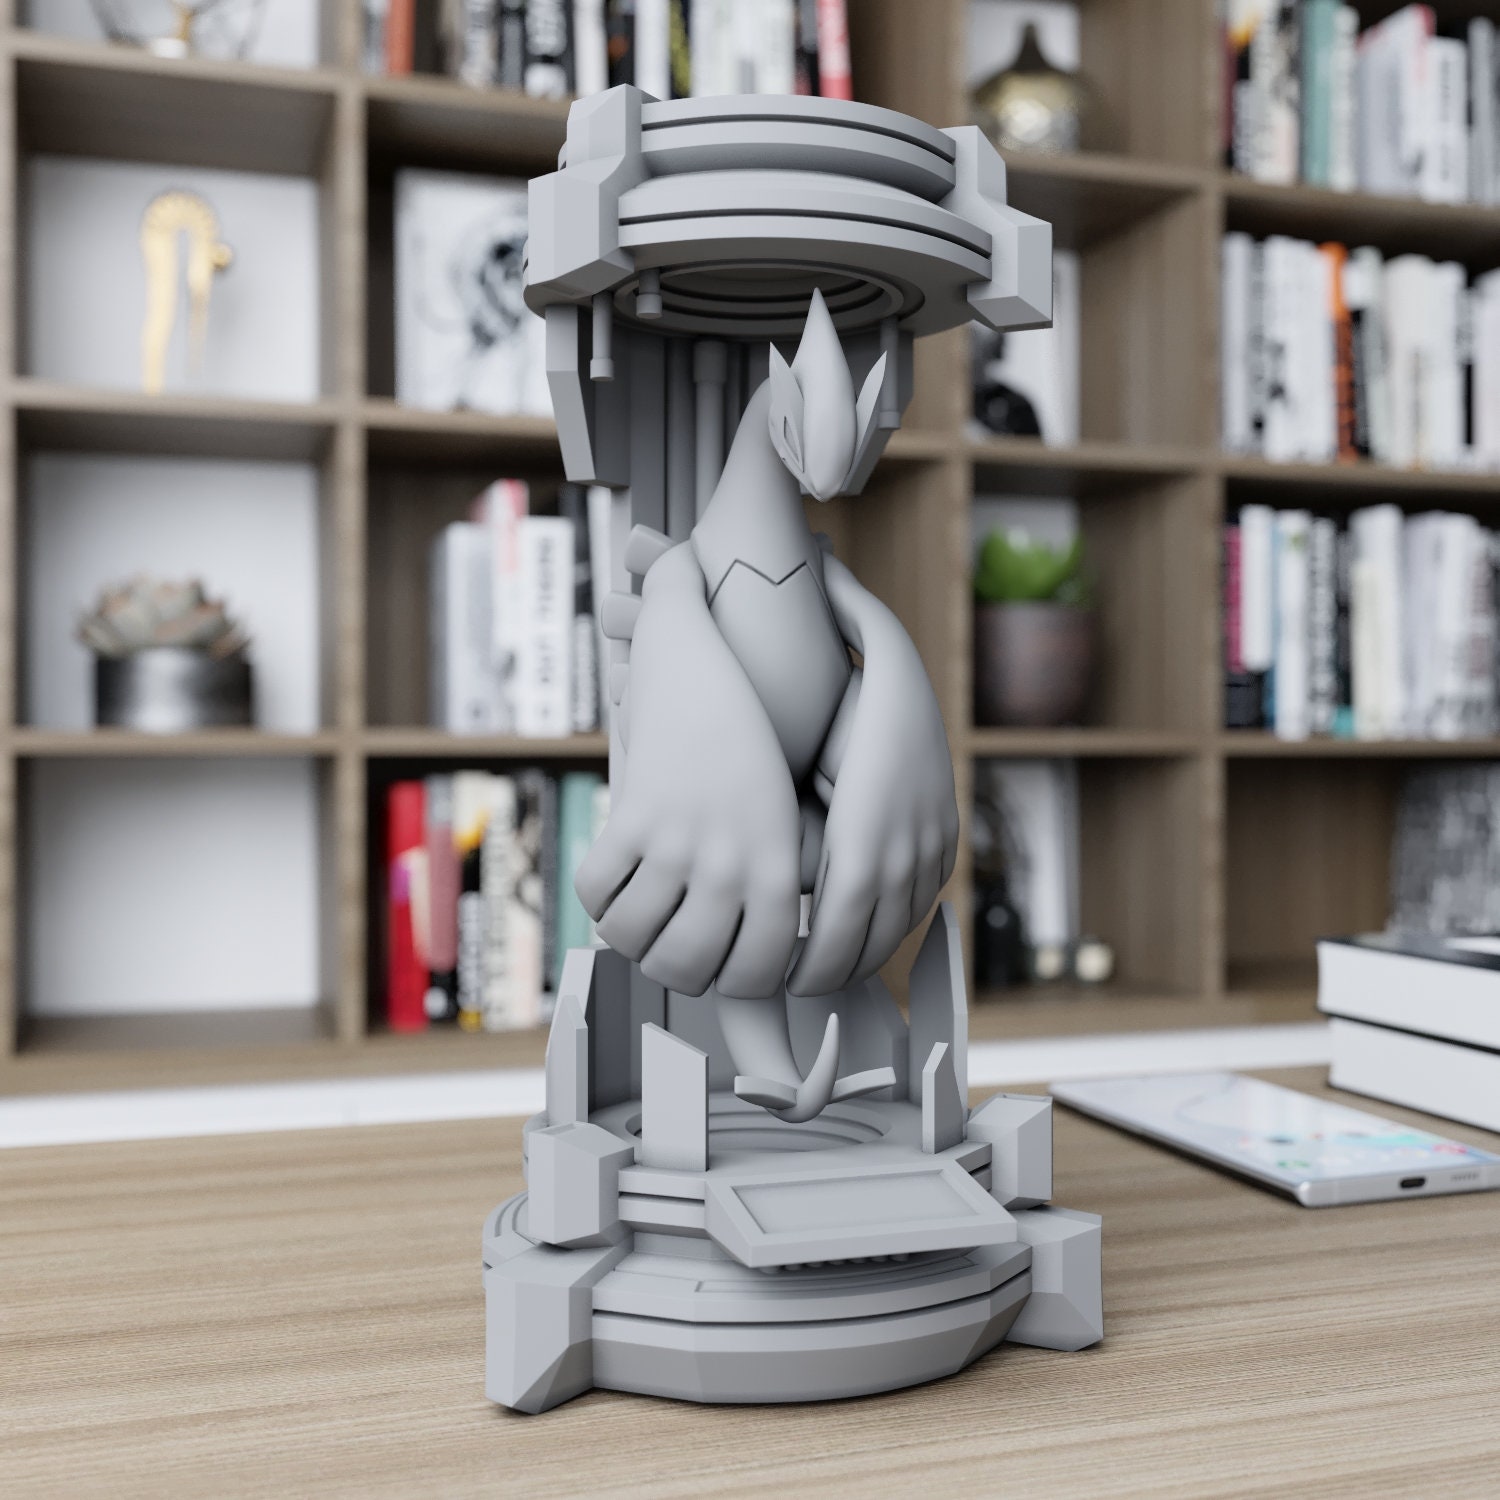 LUGIA LEGENDARY POKEMON | 3D Print Model